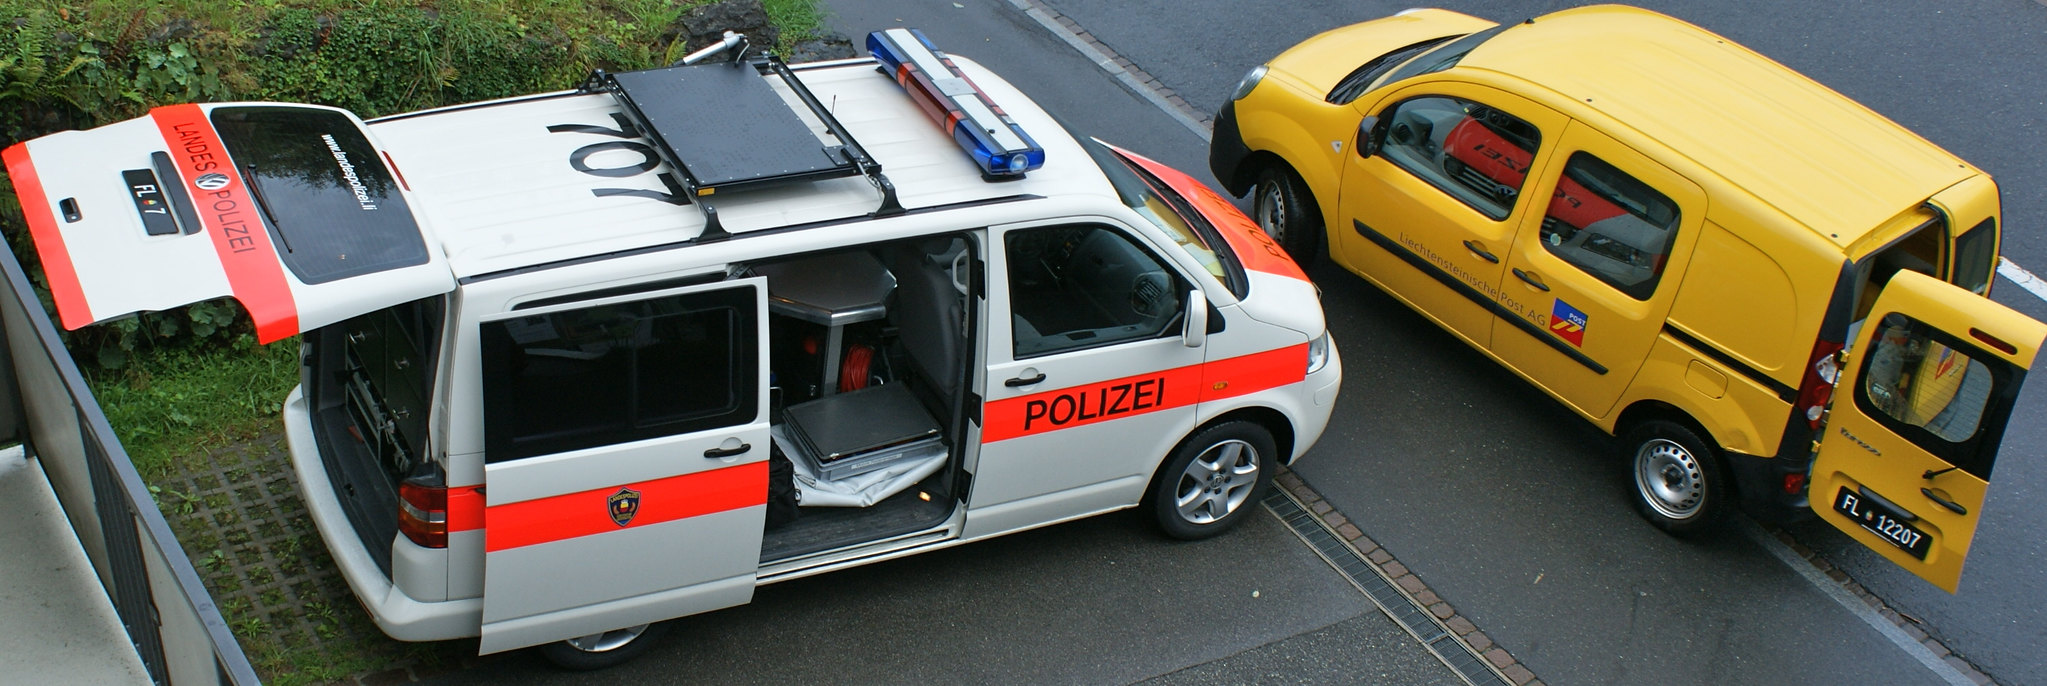 Landespolizei Liechtenstein